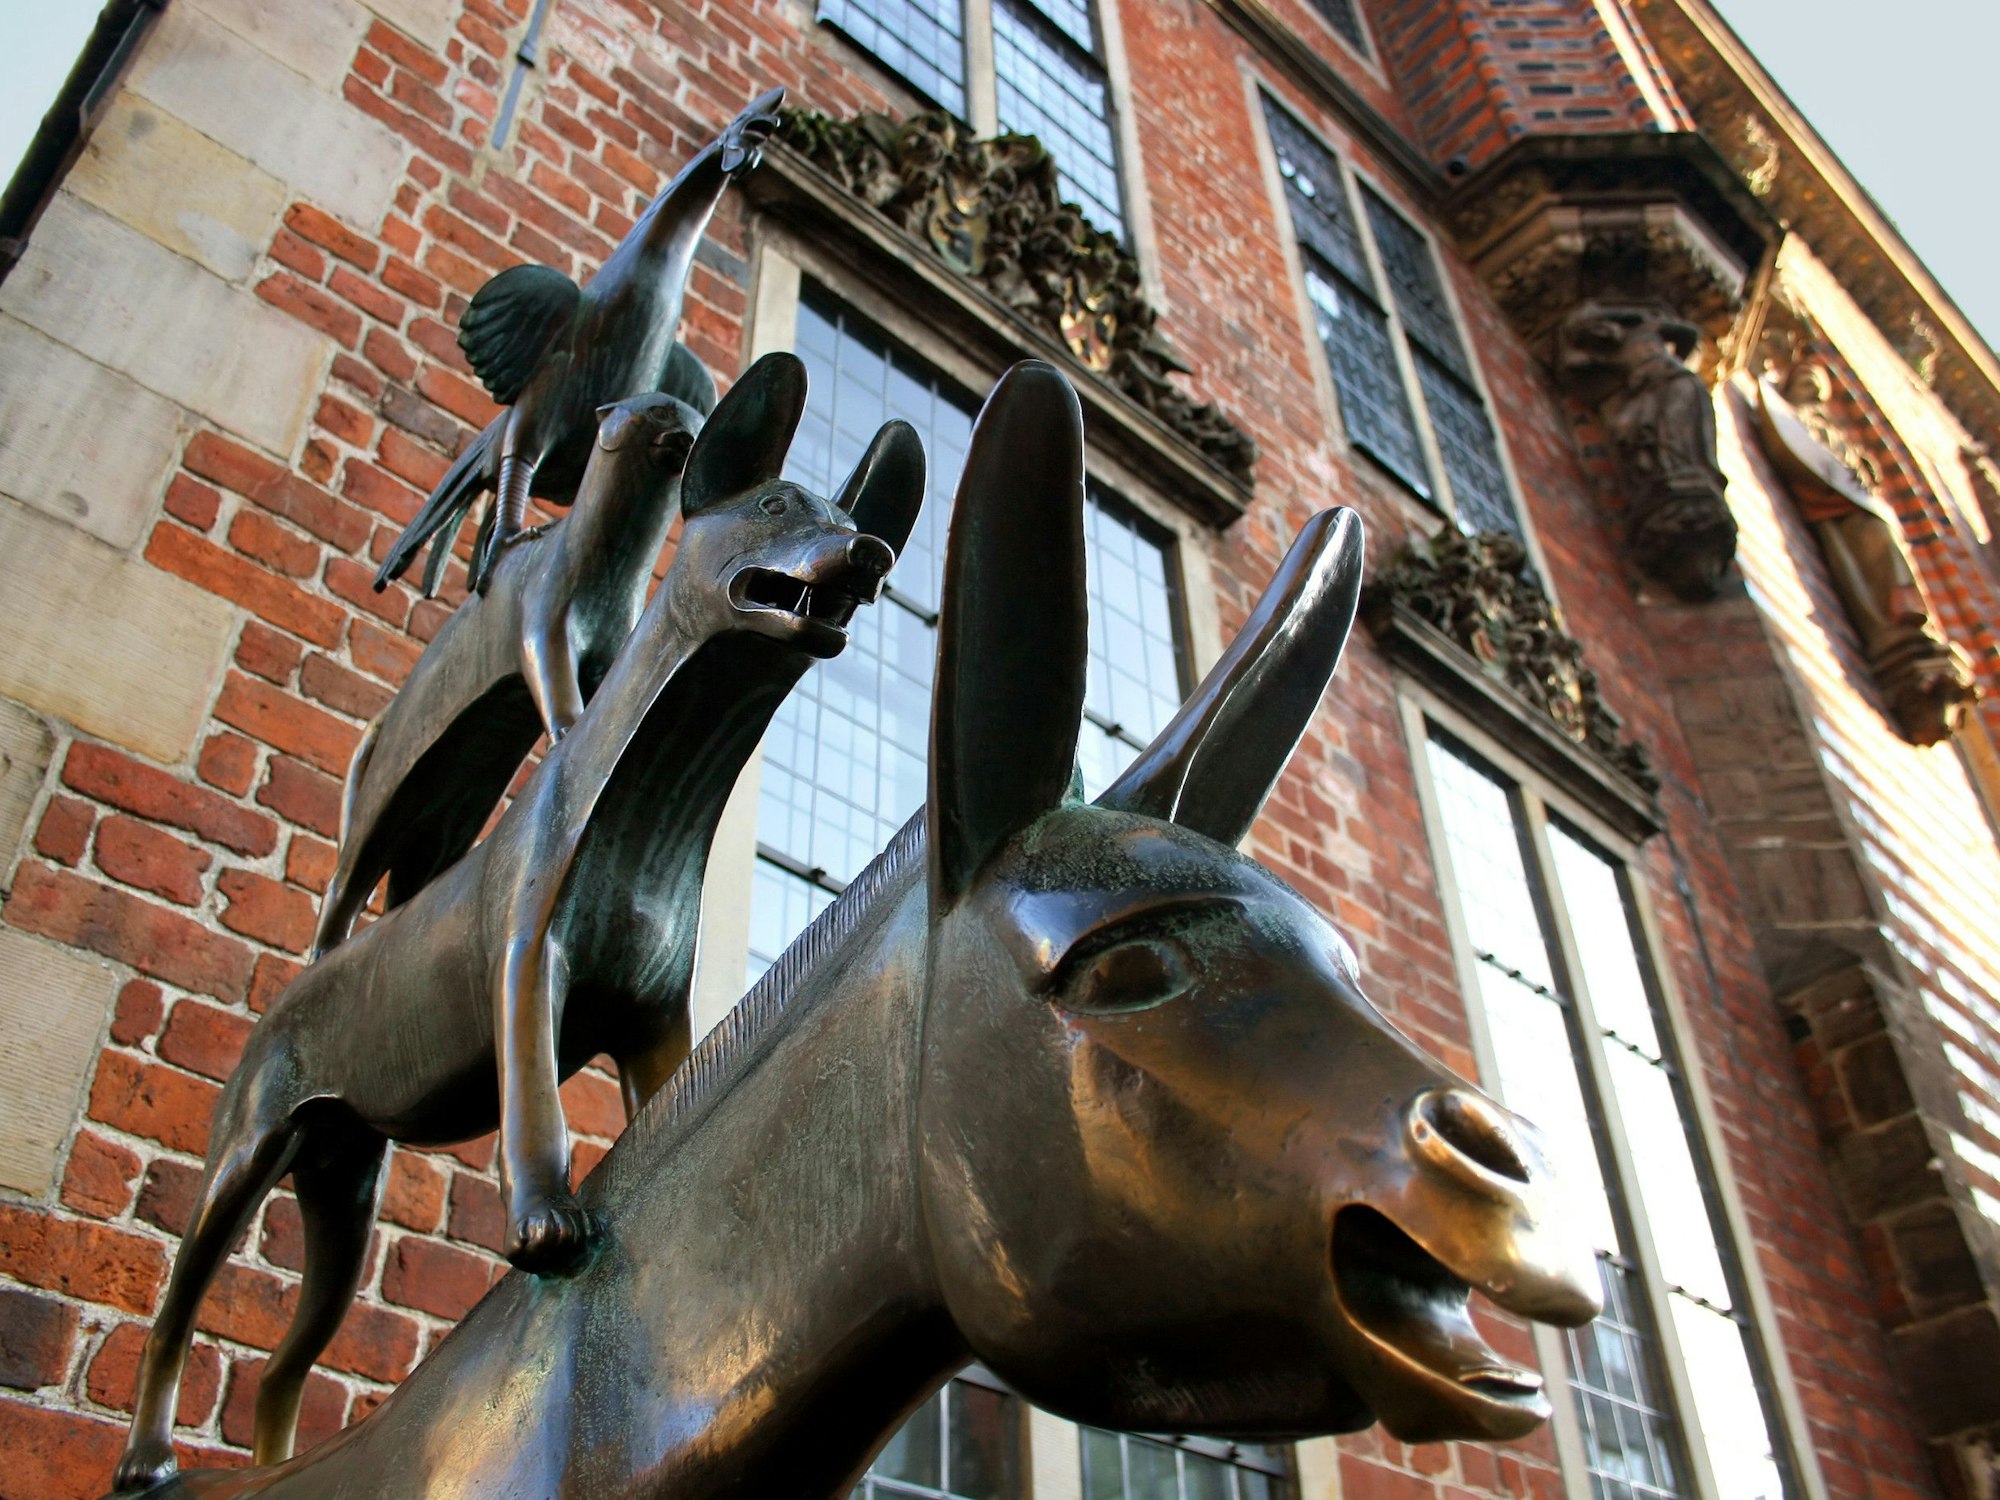 Die Bremer Stadtmusikanten (Hahn, Katze, Hund, Esel) aus Bronze gegossen vor dem Rathaus in Bremen.